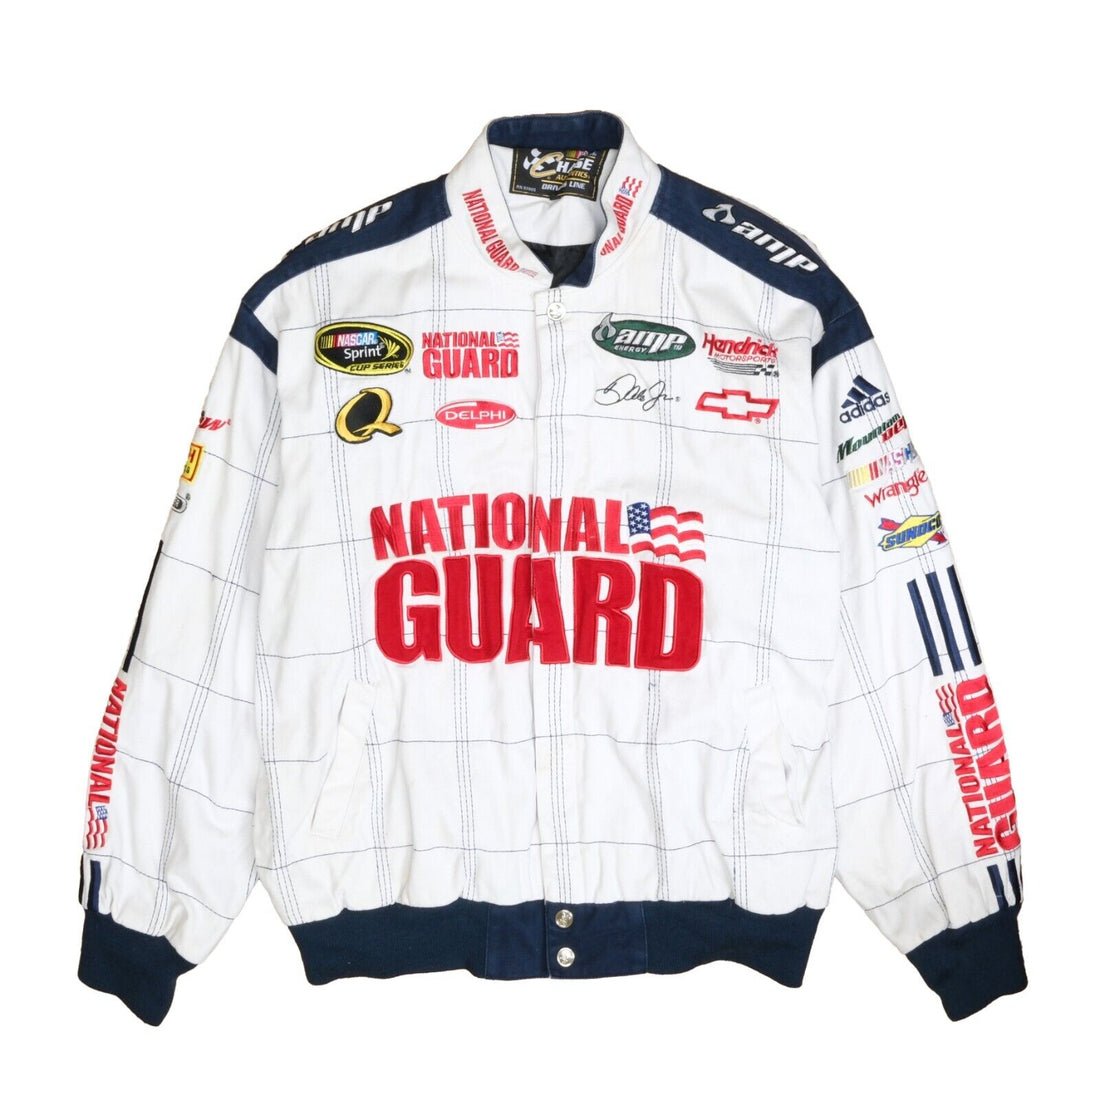 Vintage National Guard Chase Racing Bomber Jacket Size Large White NASCAR